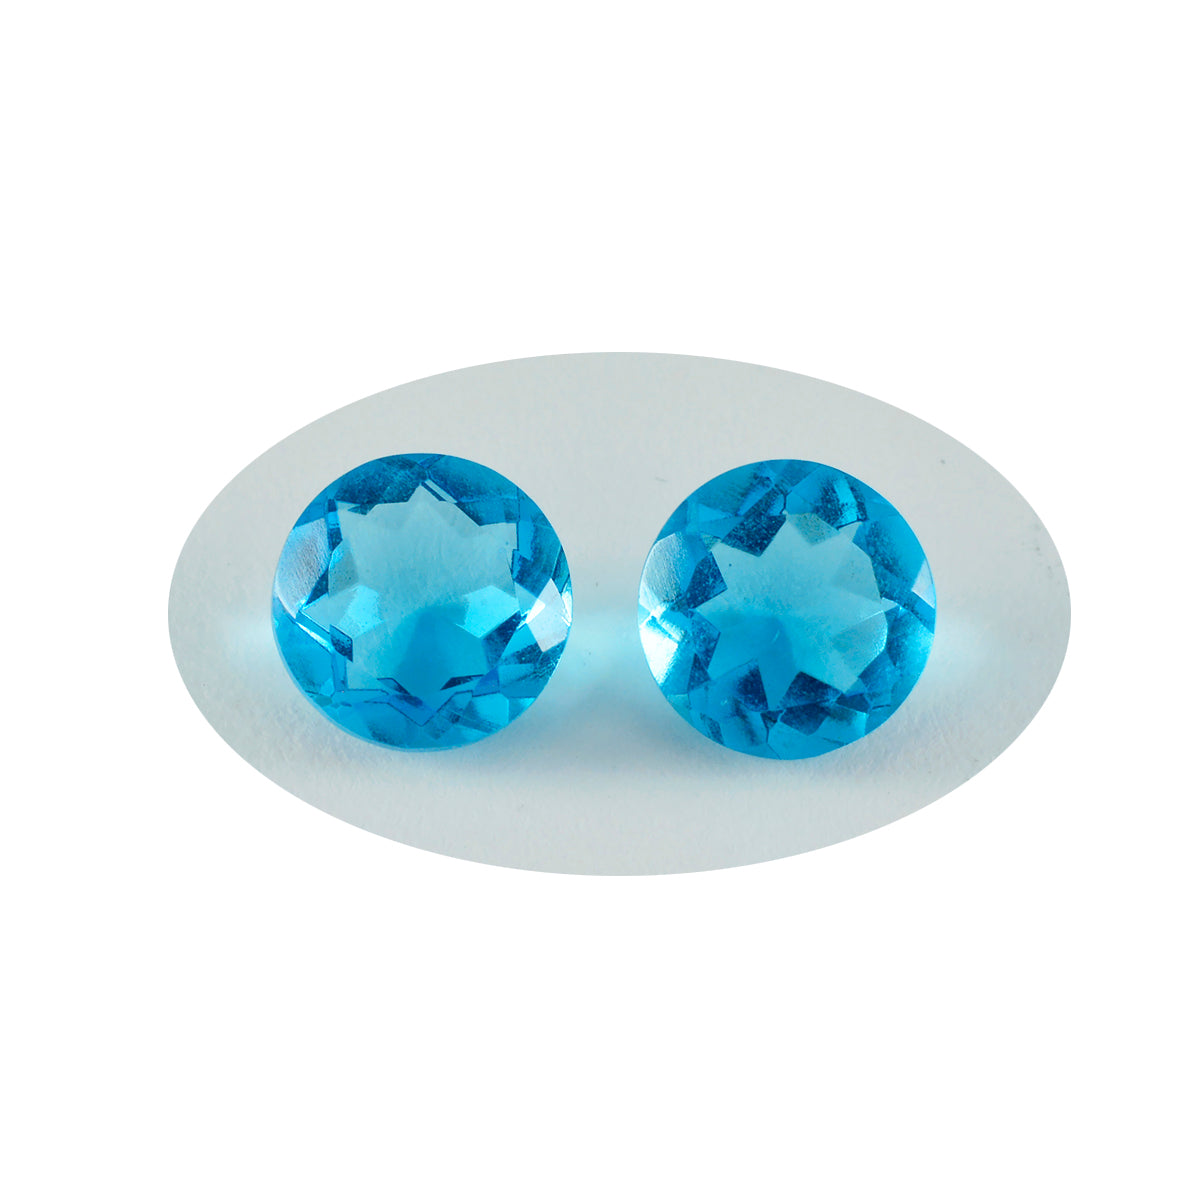 Riyogems 1 Stück blauer Topas, CZ, facettiert, 13 x 13 mm, runde Form, A+1-Qualität, lose Edelsteine